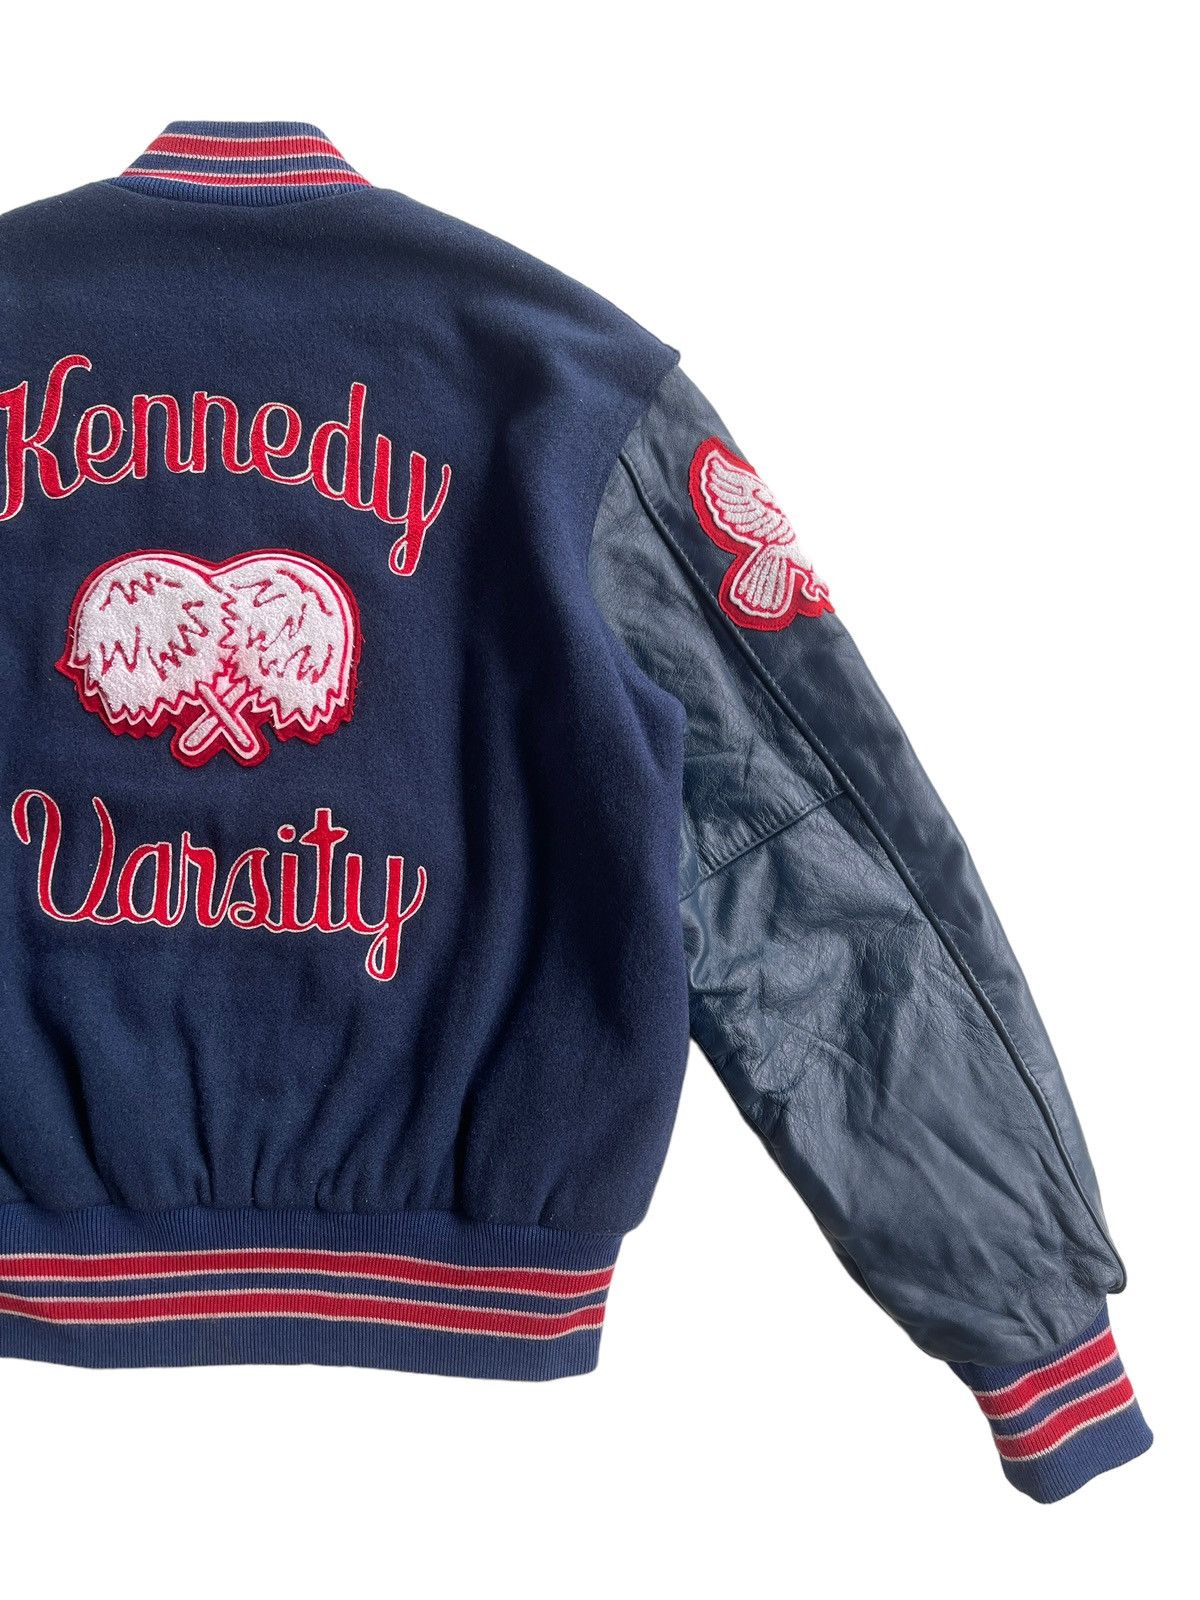 Vintage Vintage 70s Delong Kennedy Varsity Jacket Size US M / EU 48-50 / 2 - 6 Thumbnail